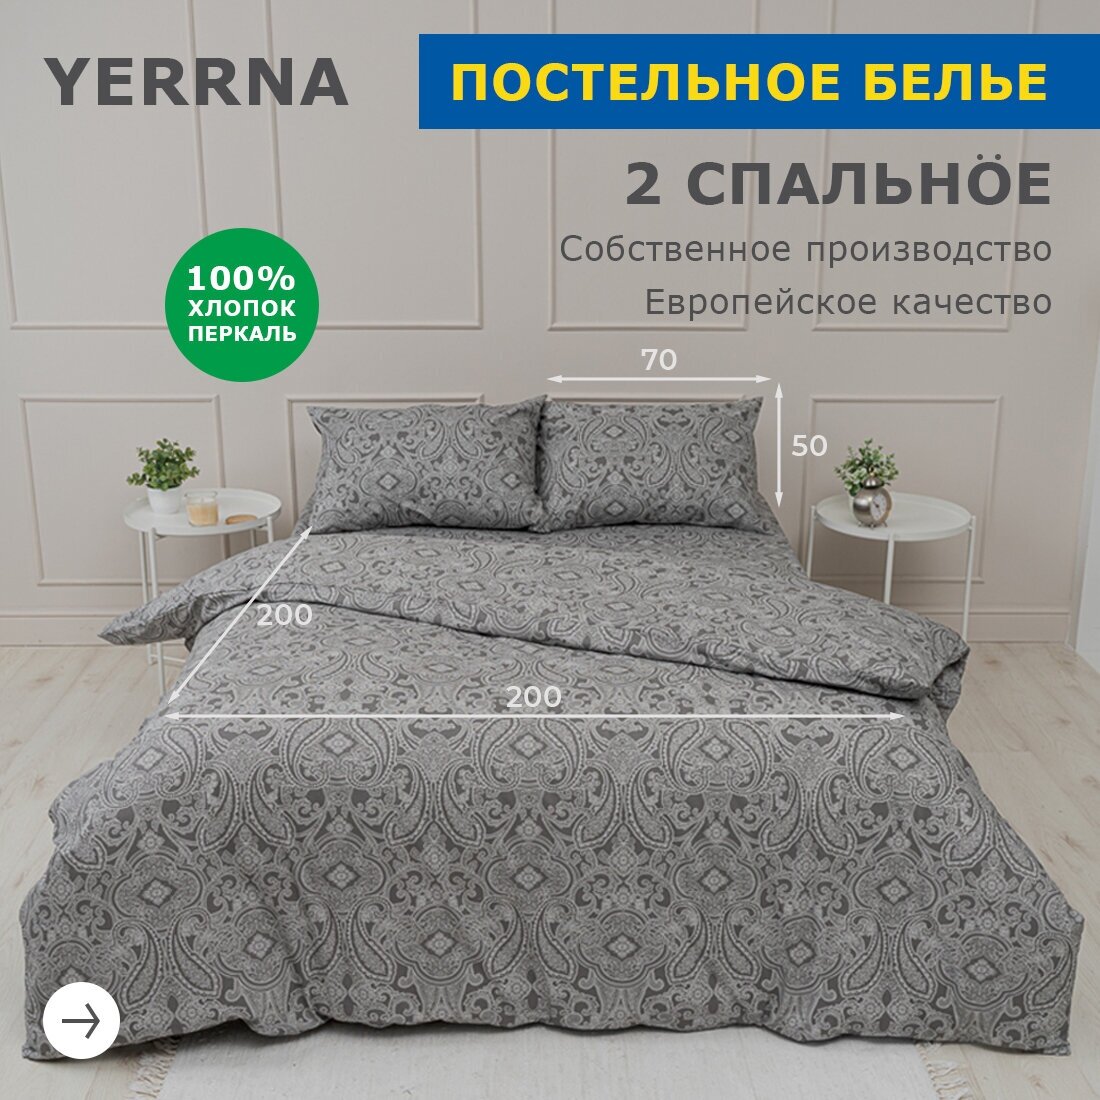 Комплект постельного белья, 2 спальный YERRNA, наволочки 50х70 2шт, перкаль, темно-серый, с2082шв/208882